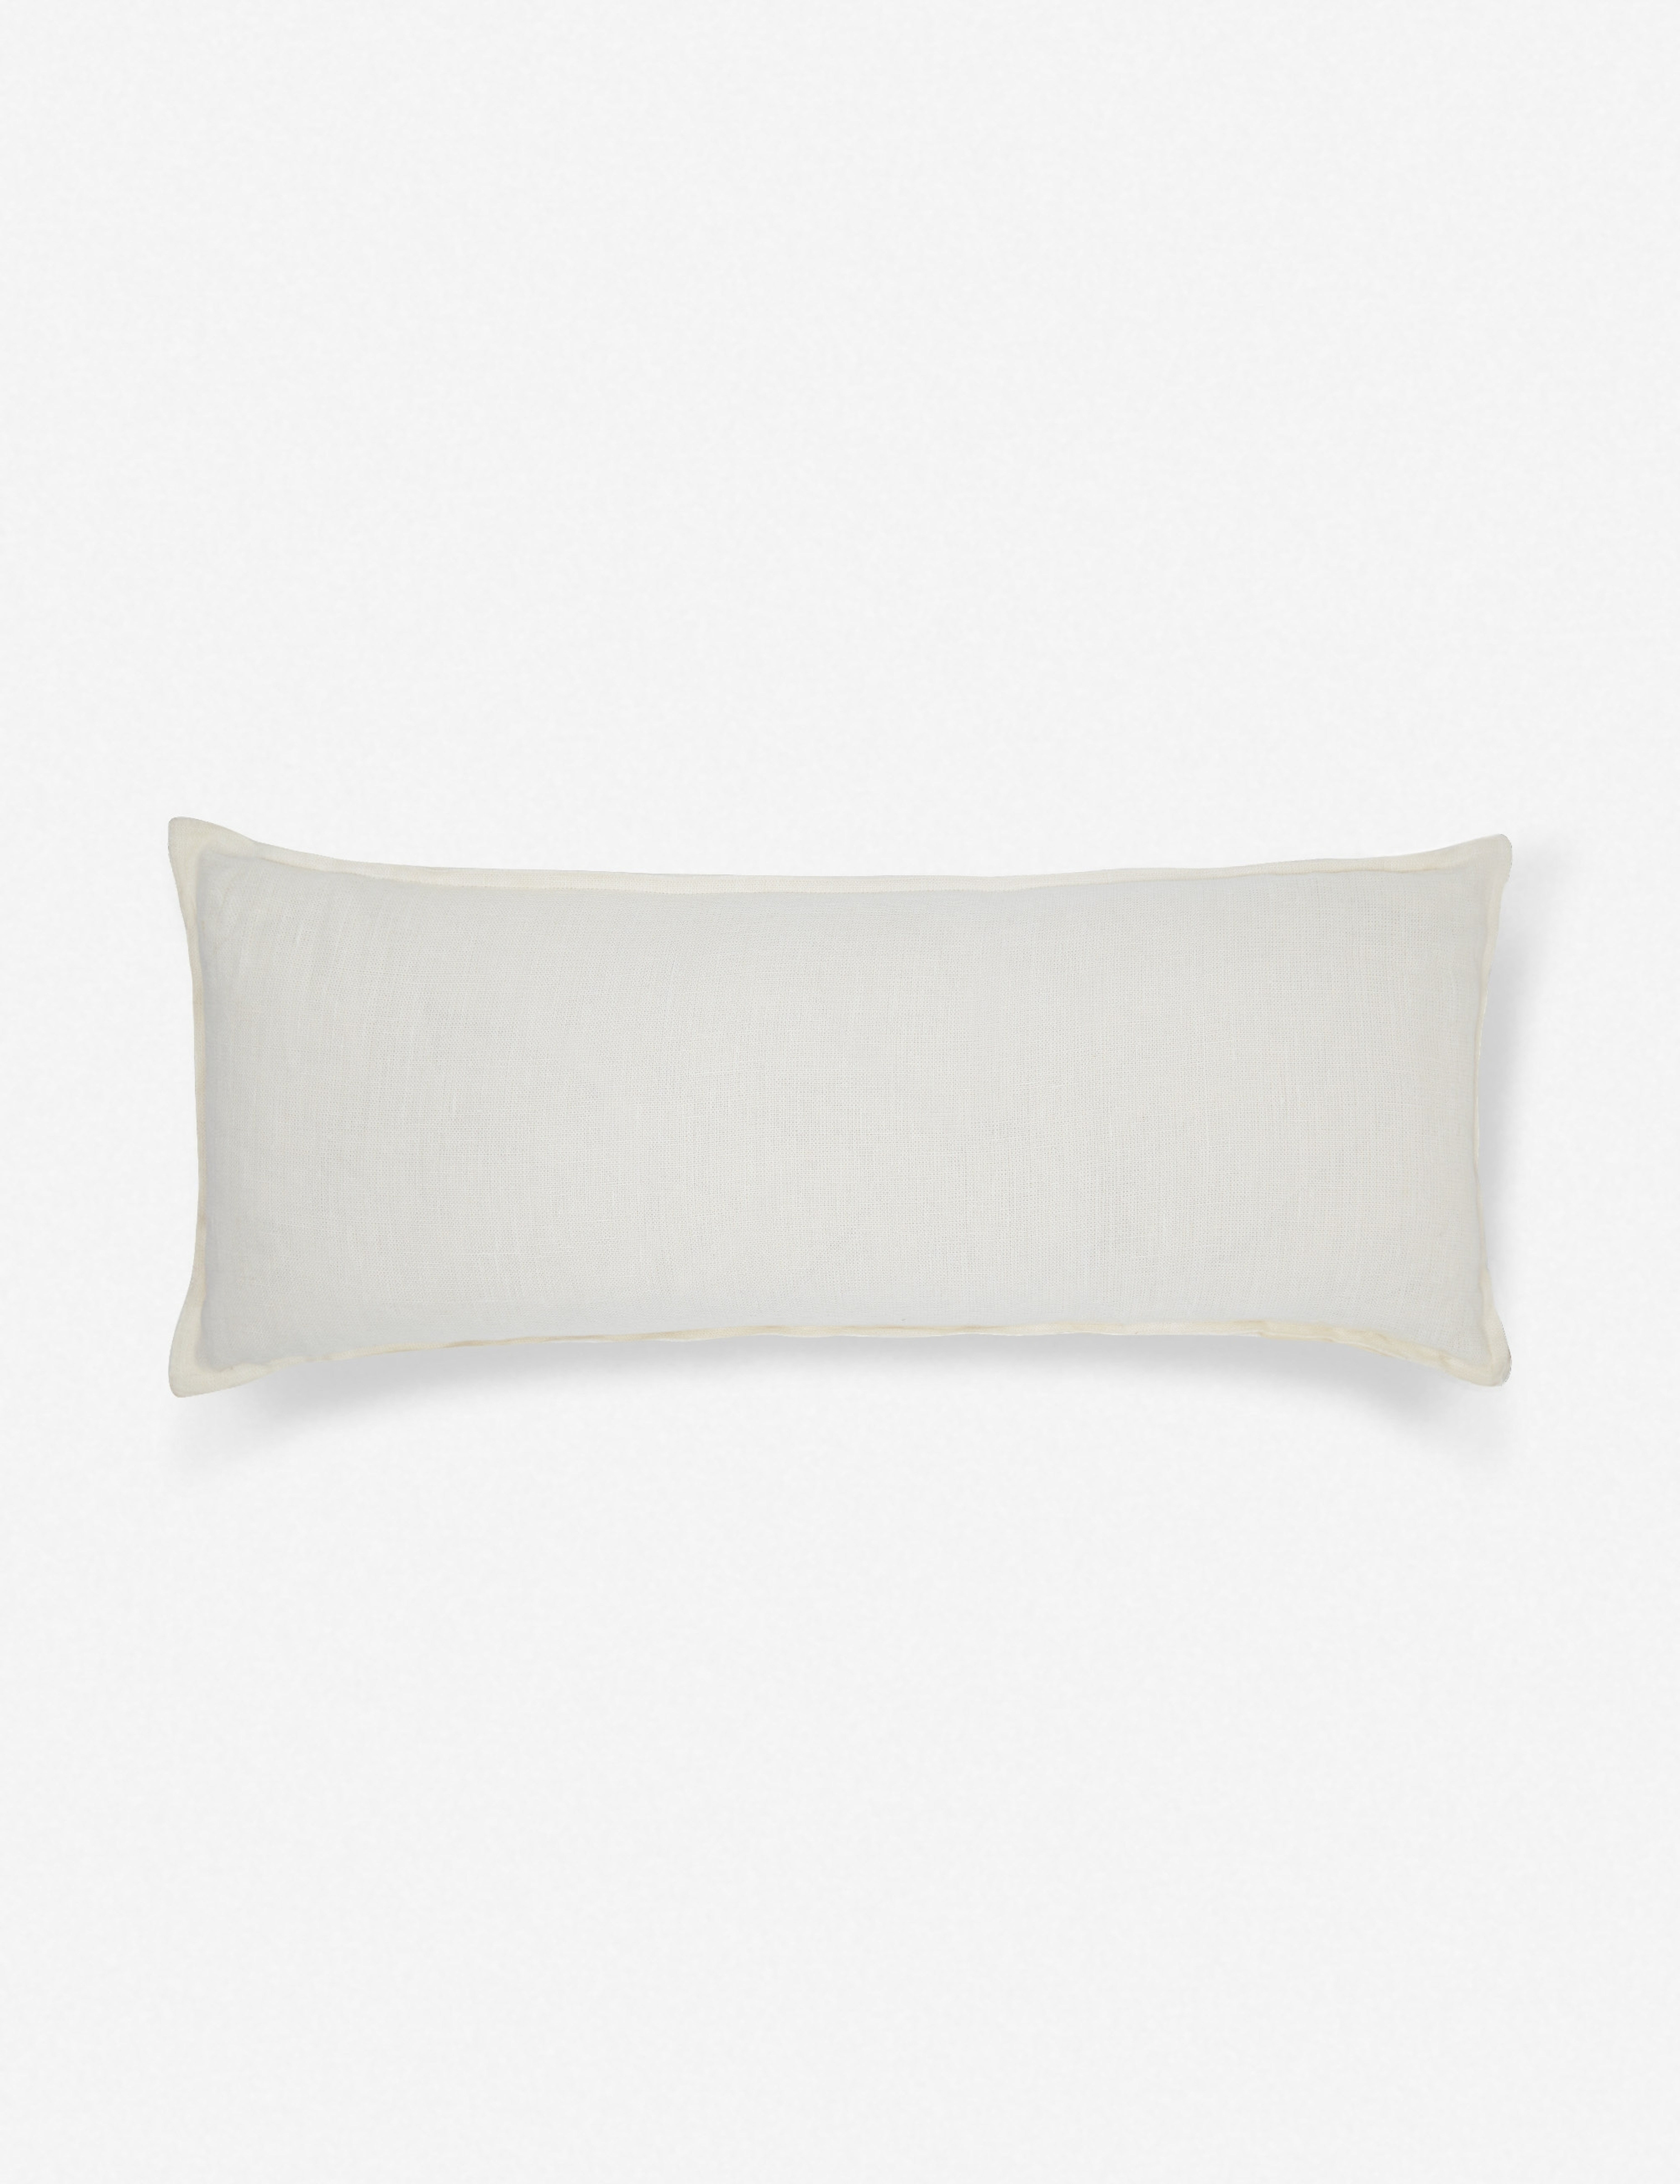 Arlo Linen Long Lumbar Pillow, Ivory - Lulu and Georgia